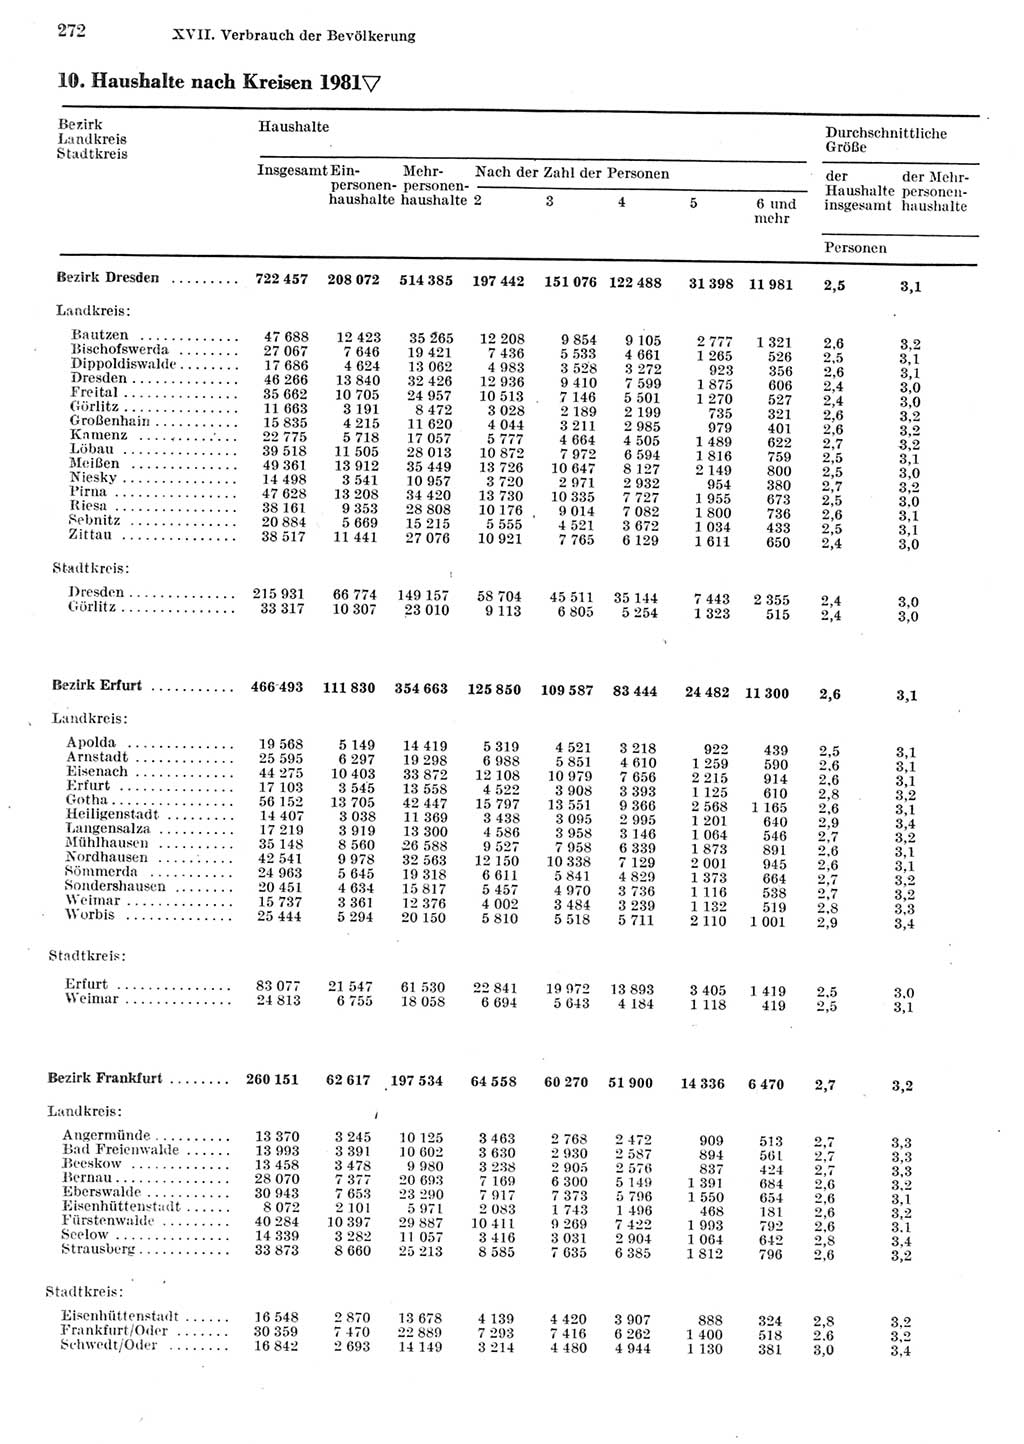 Statistisches Jahrbuch der Deutschen Demokratischen Republik (DDR) 1982, Seite 272 (Stat. Jb. DDR 1982, S. 272)